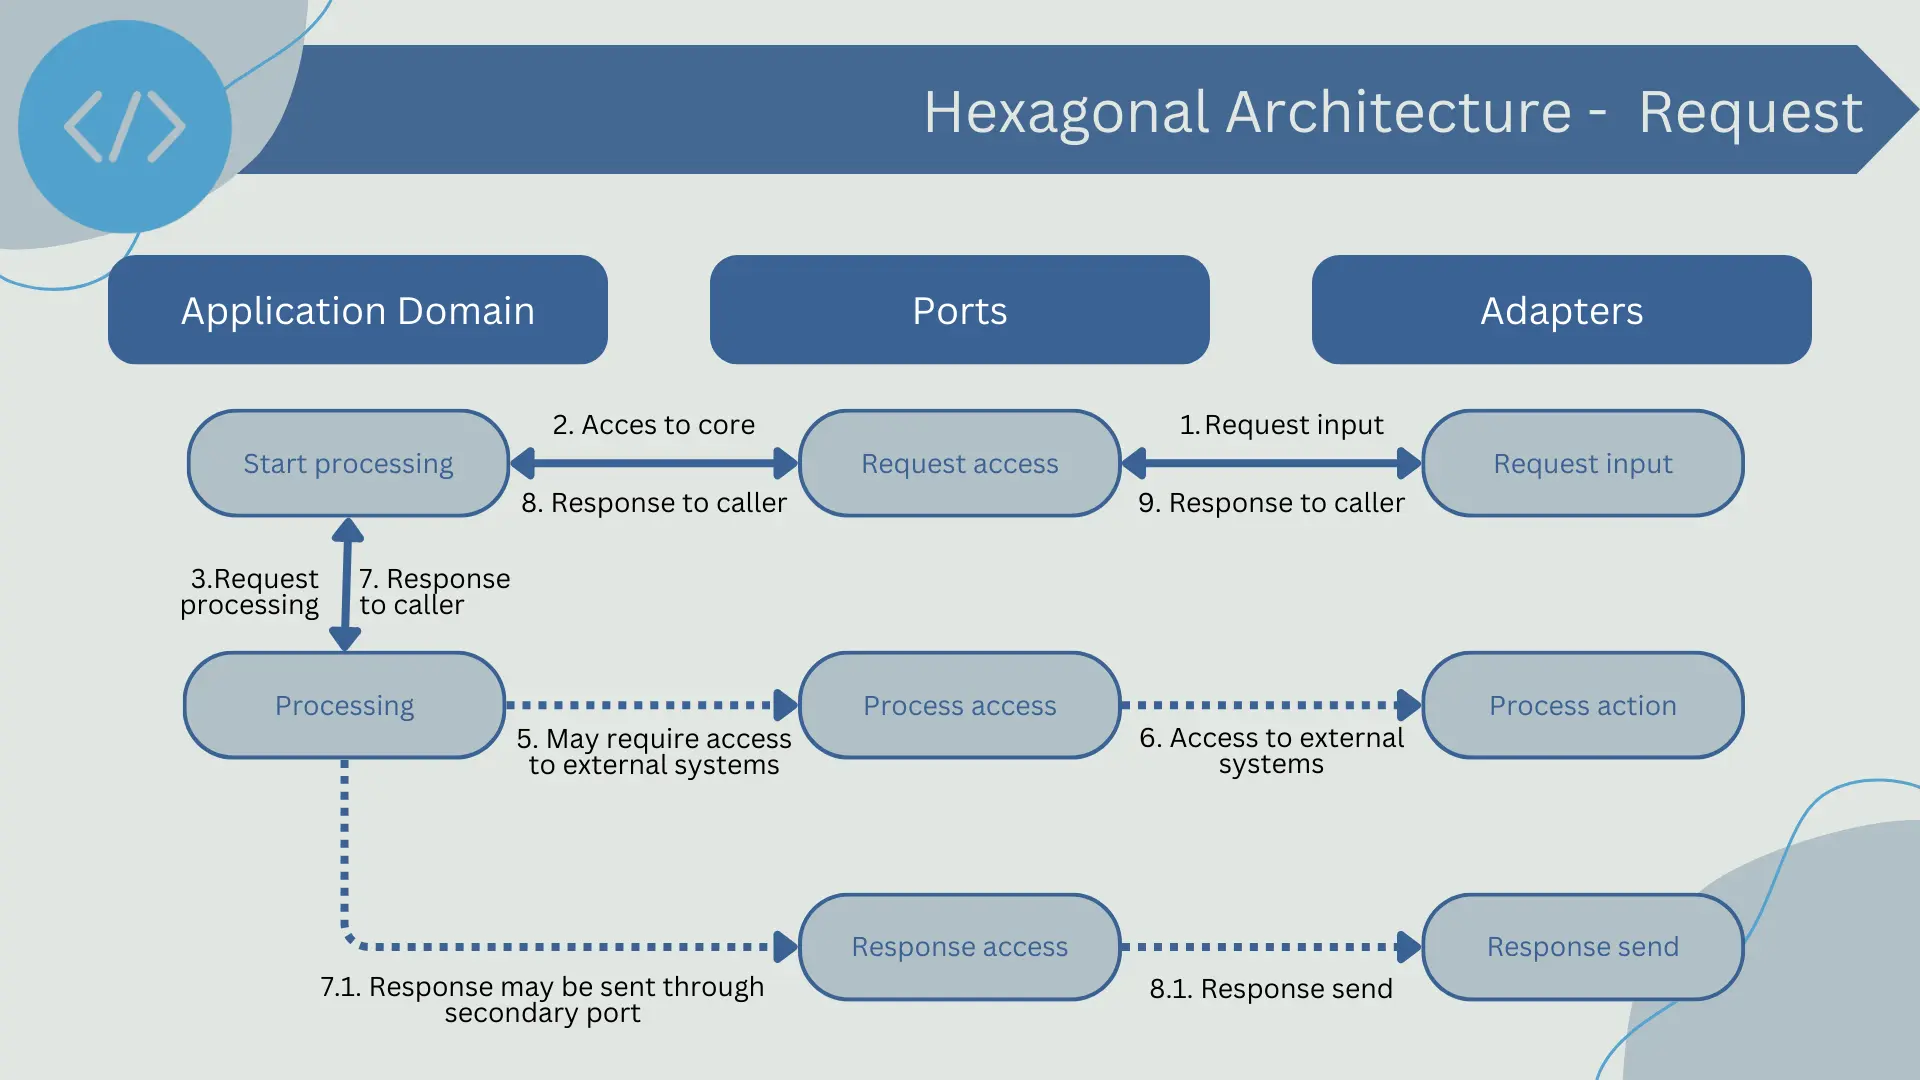 Request workflow in hexagonal architecture